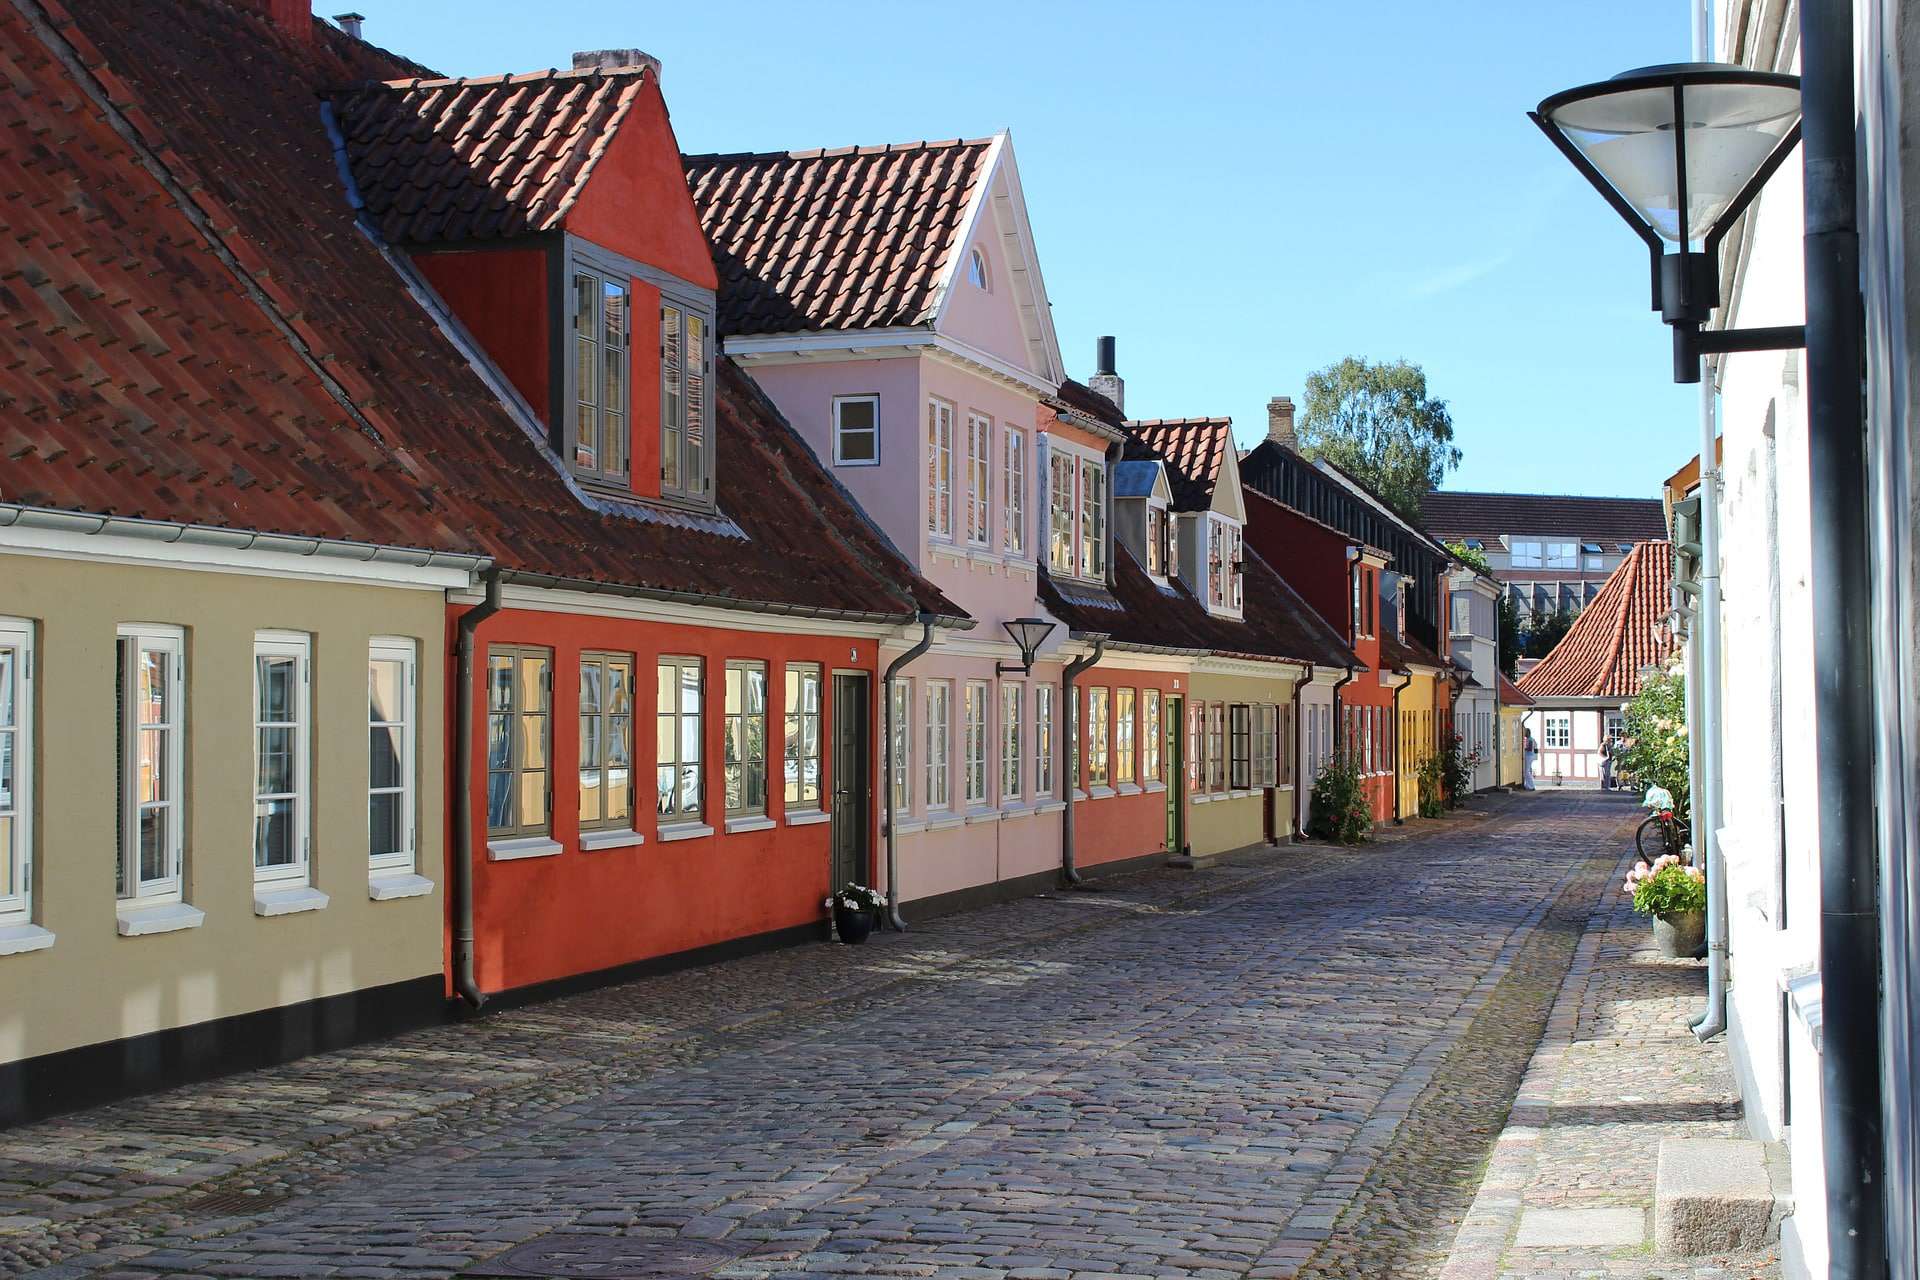 Odense en Dinamarca